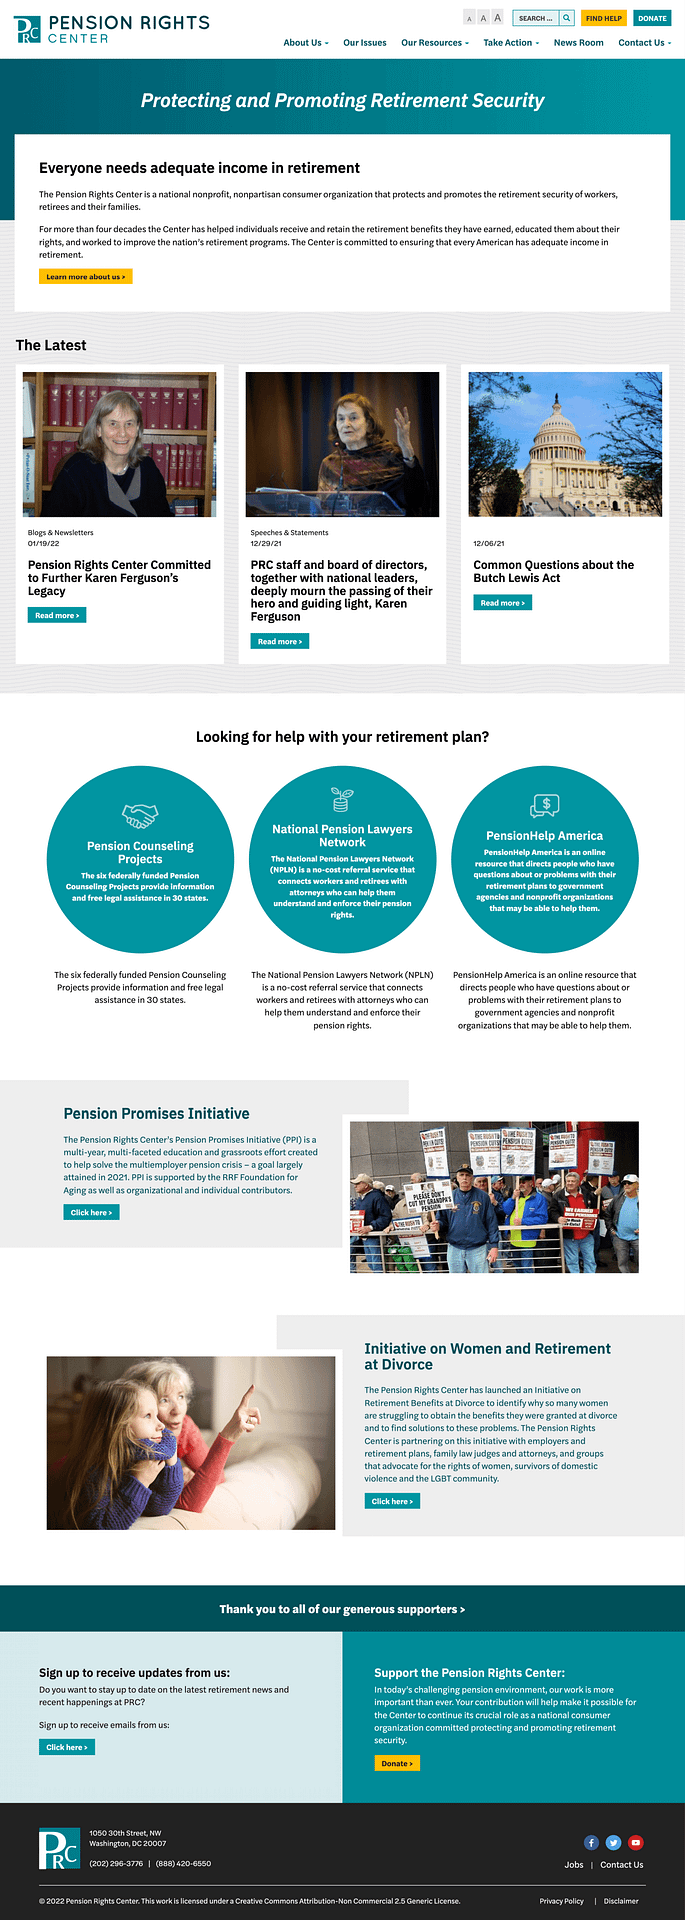 Pension Rights Center website design detail